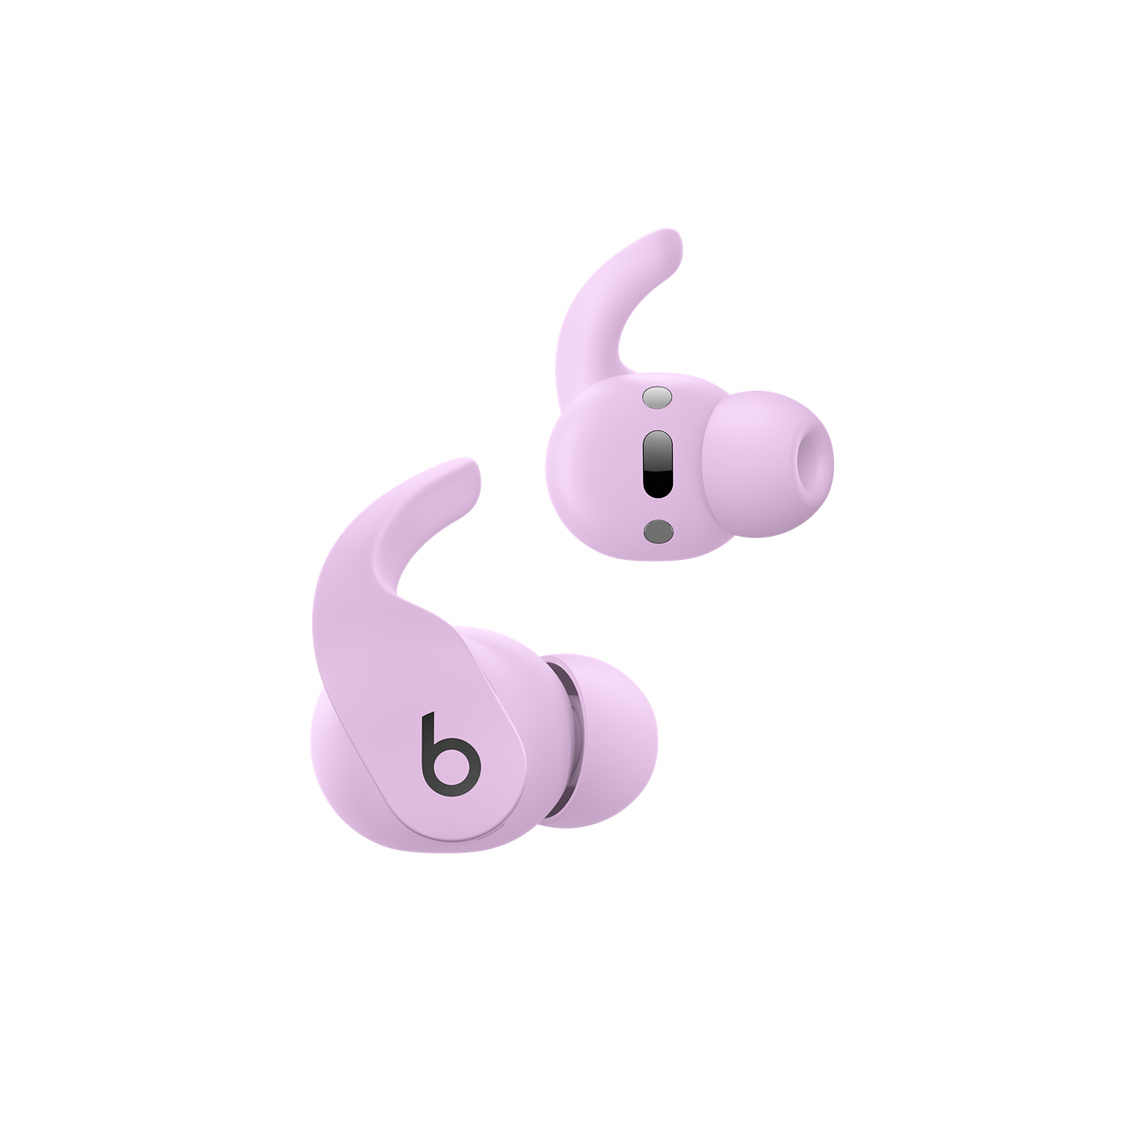 Tai Nghe Không Dây Đích Thực Beats Fit Pro, màu Tím Thạch Anh, cho thấy các nút điều khiển trên tai cho phép bạn quản lý cuộc gọi và điều khiển nhạc. 